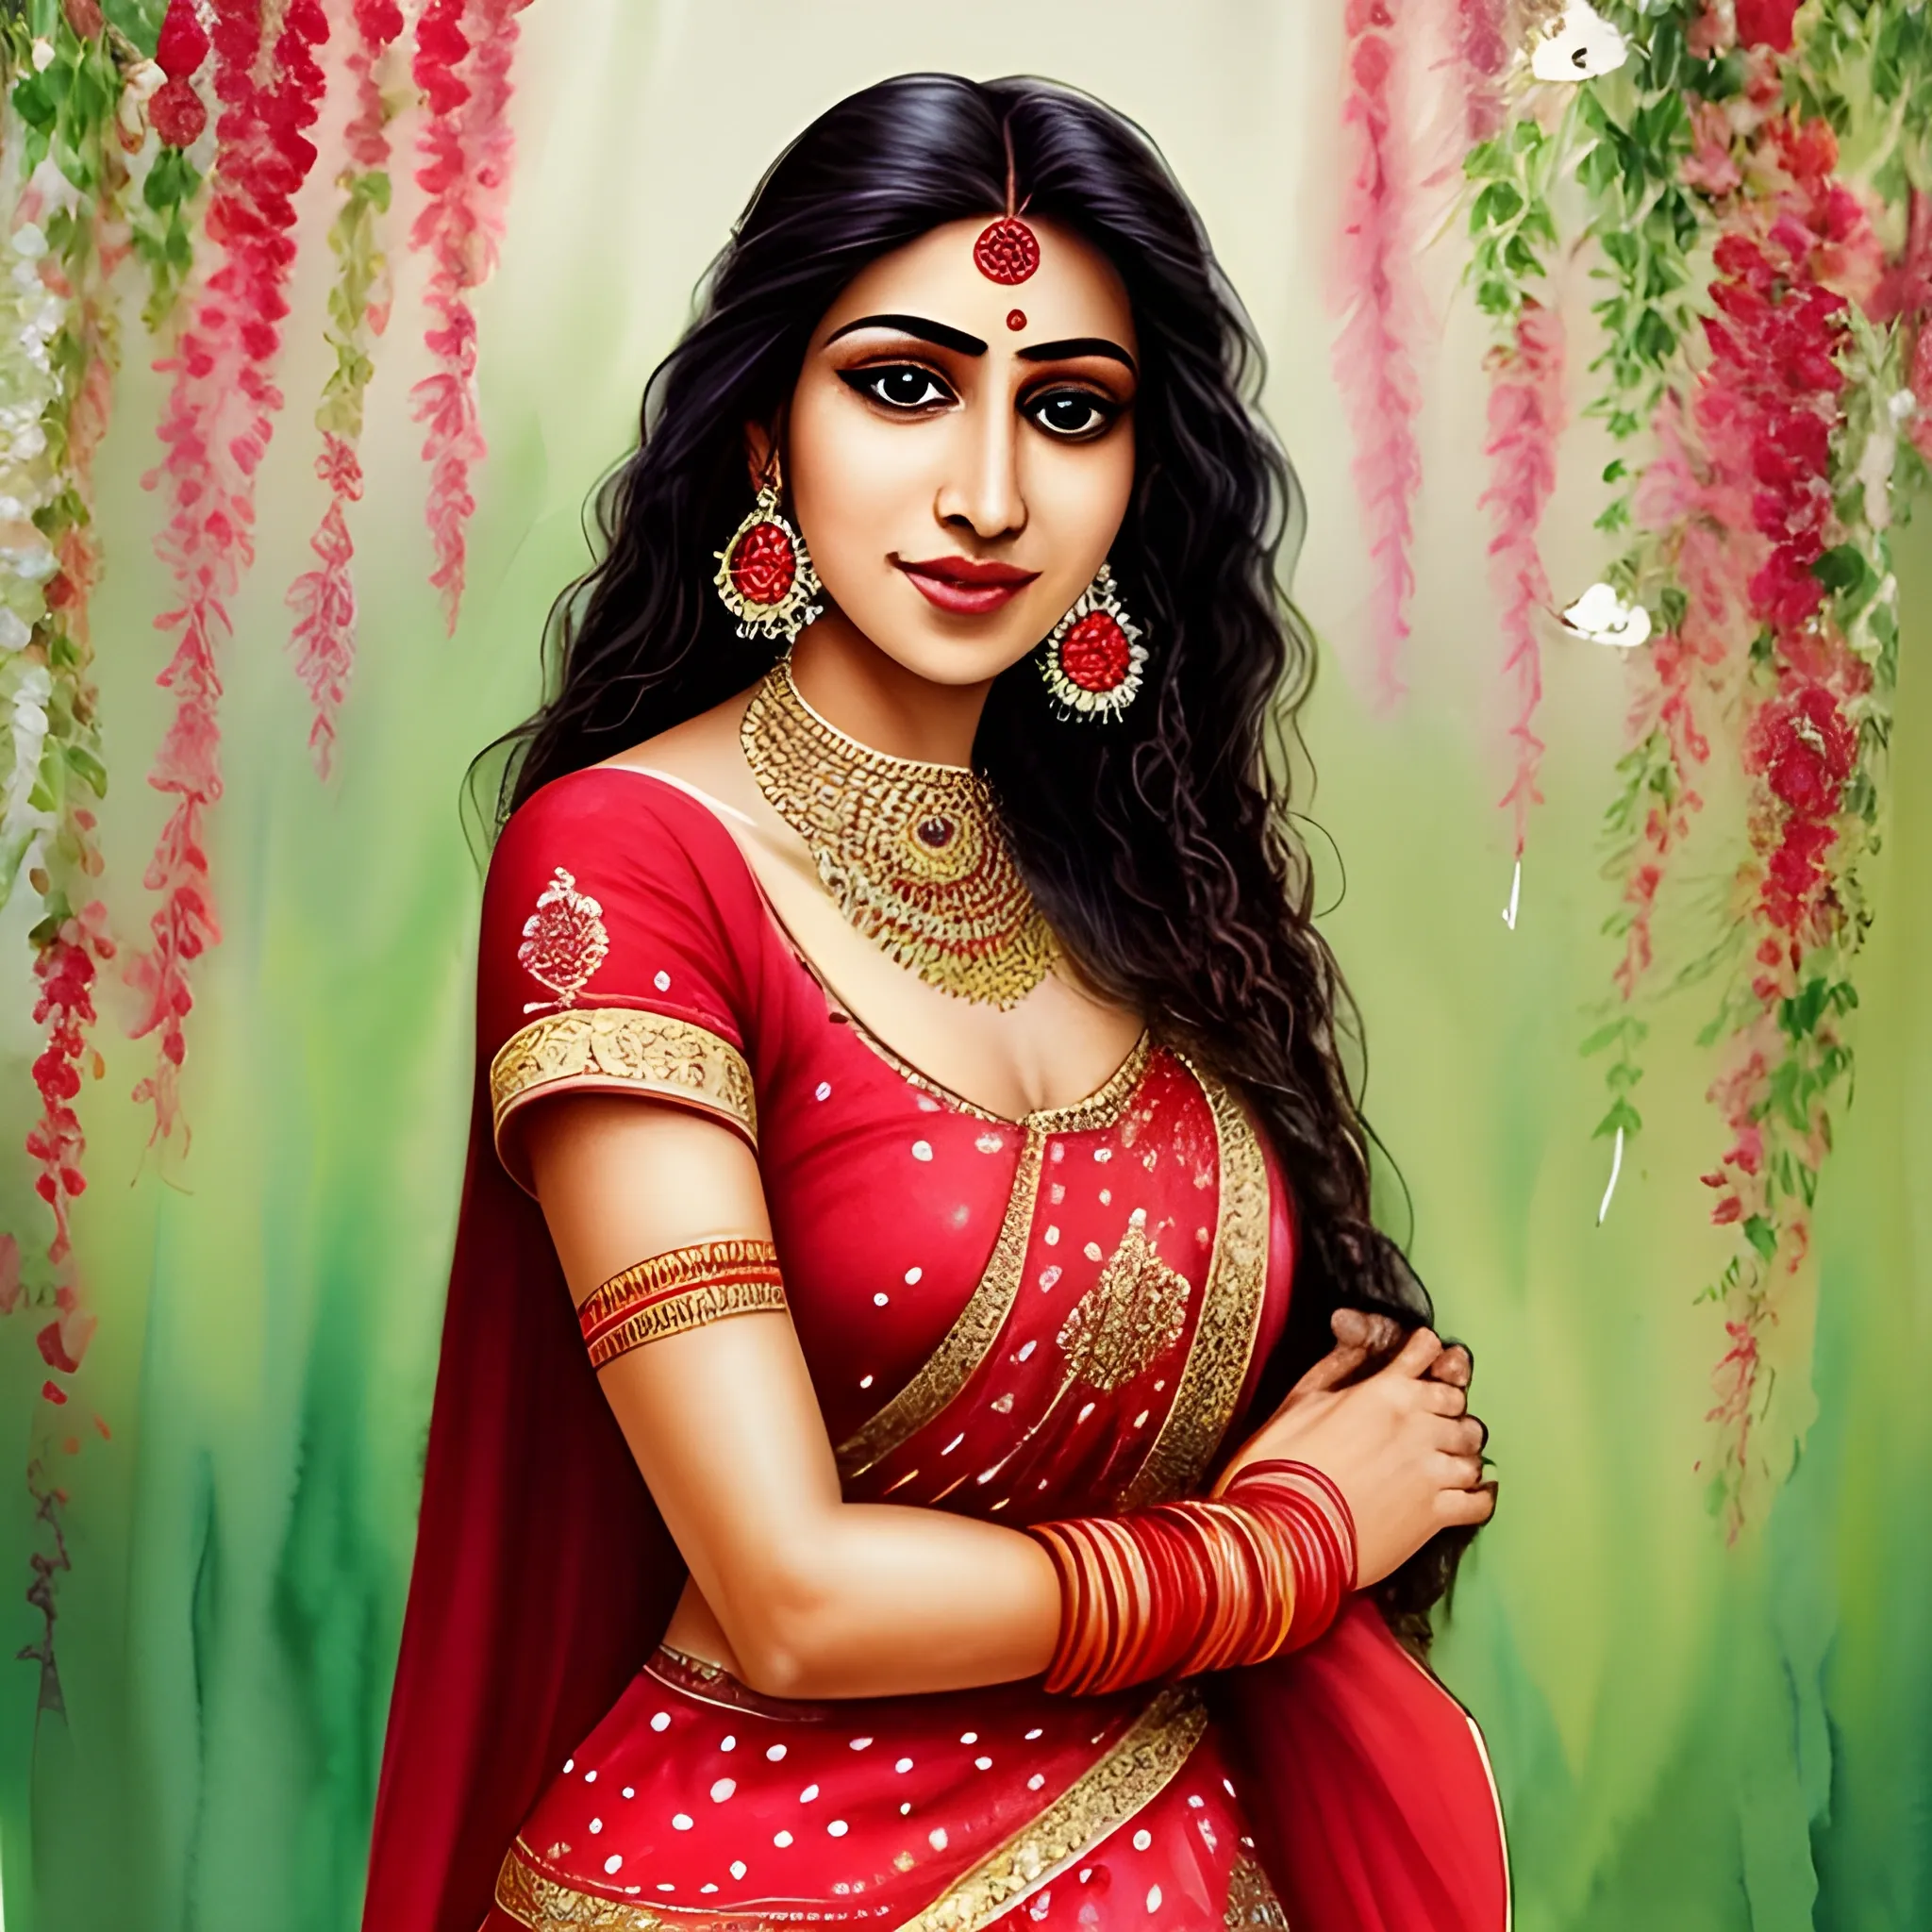 most beautiful indian women